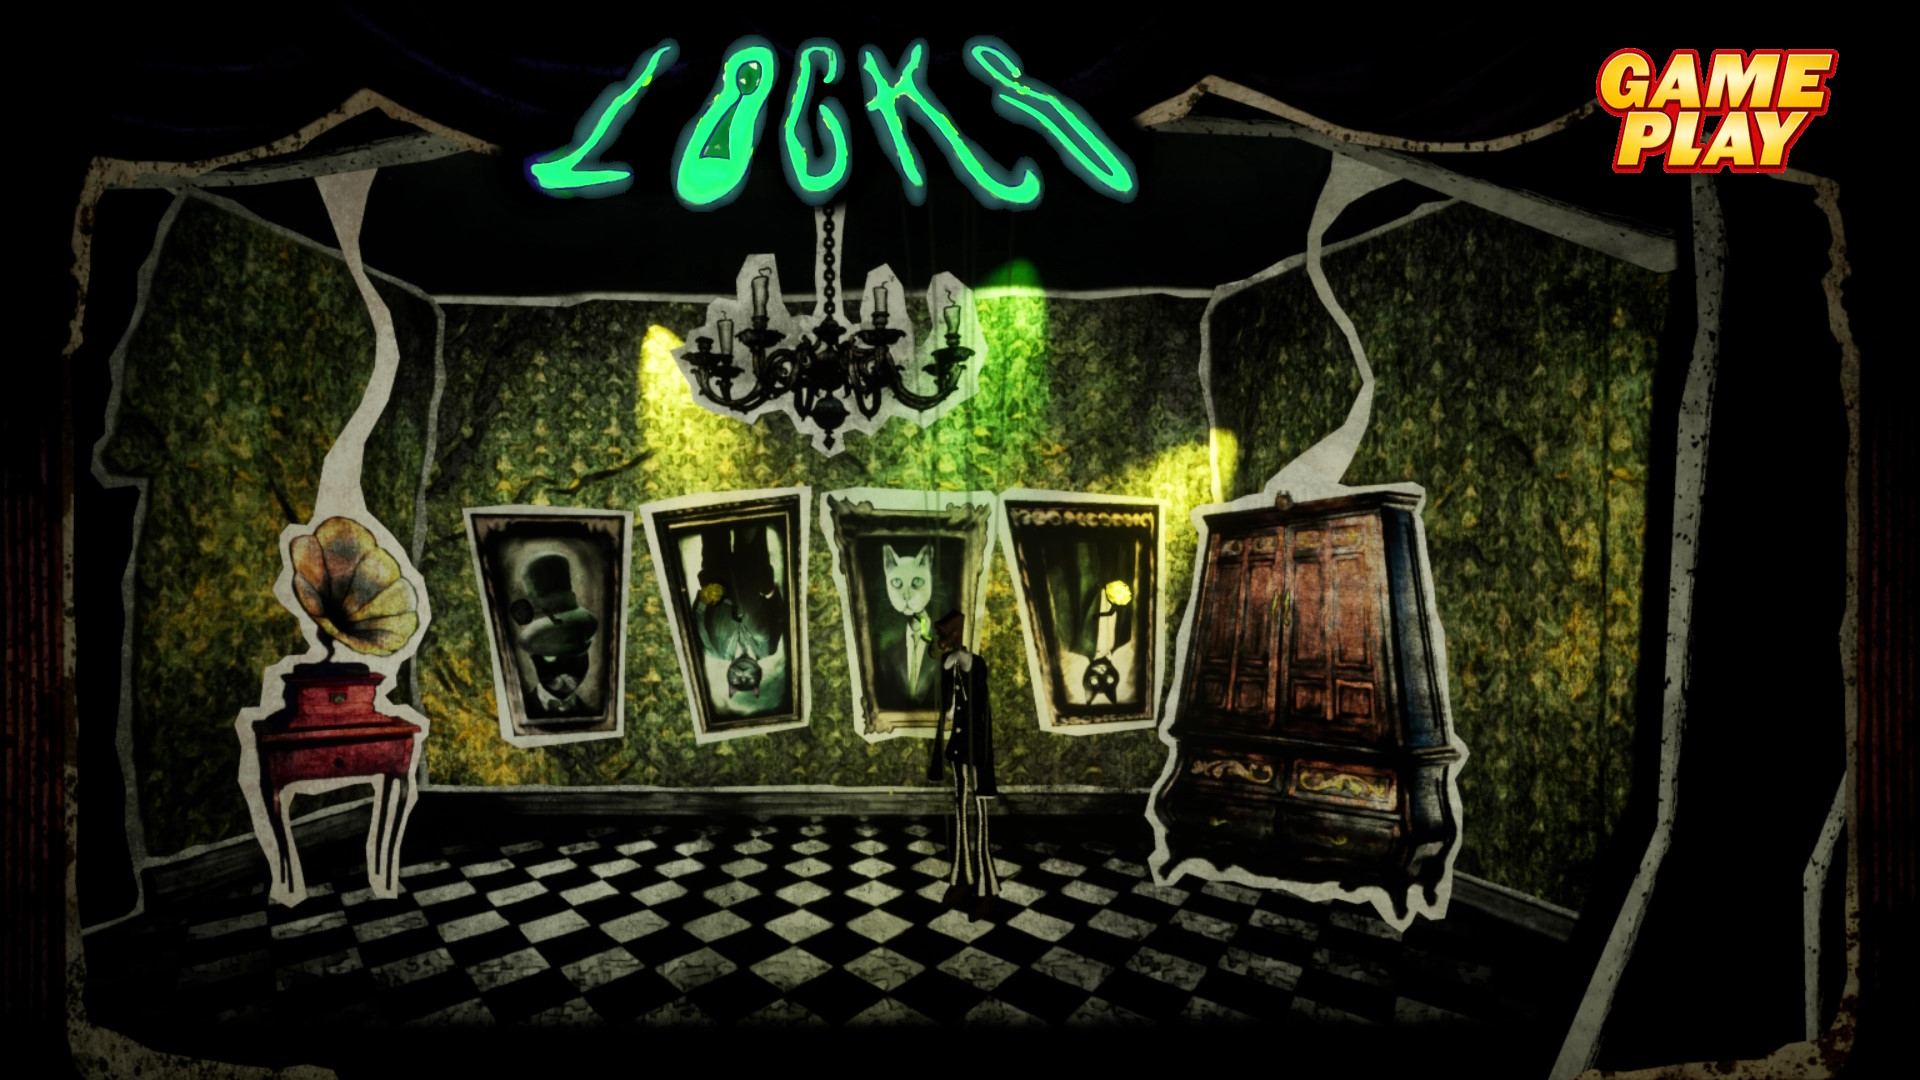 Locks ✅ Отличная головоломка Кукловода с хоррор элементами ✅ PC Steam игра 2023/Бесплатный Демо тест